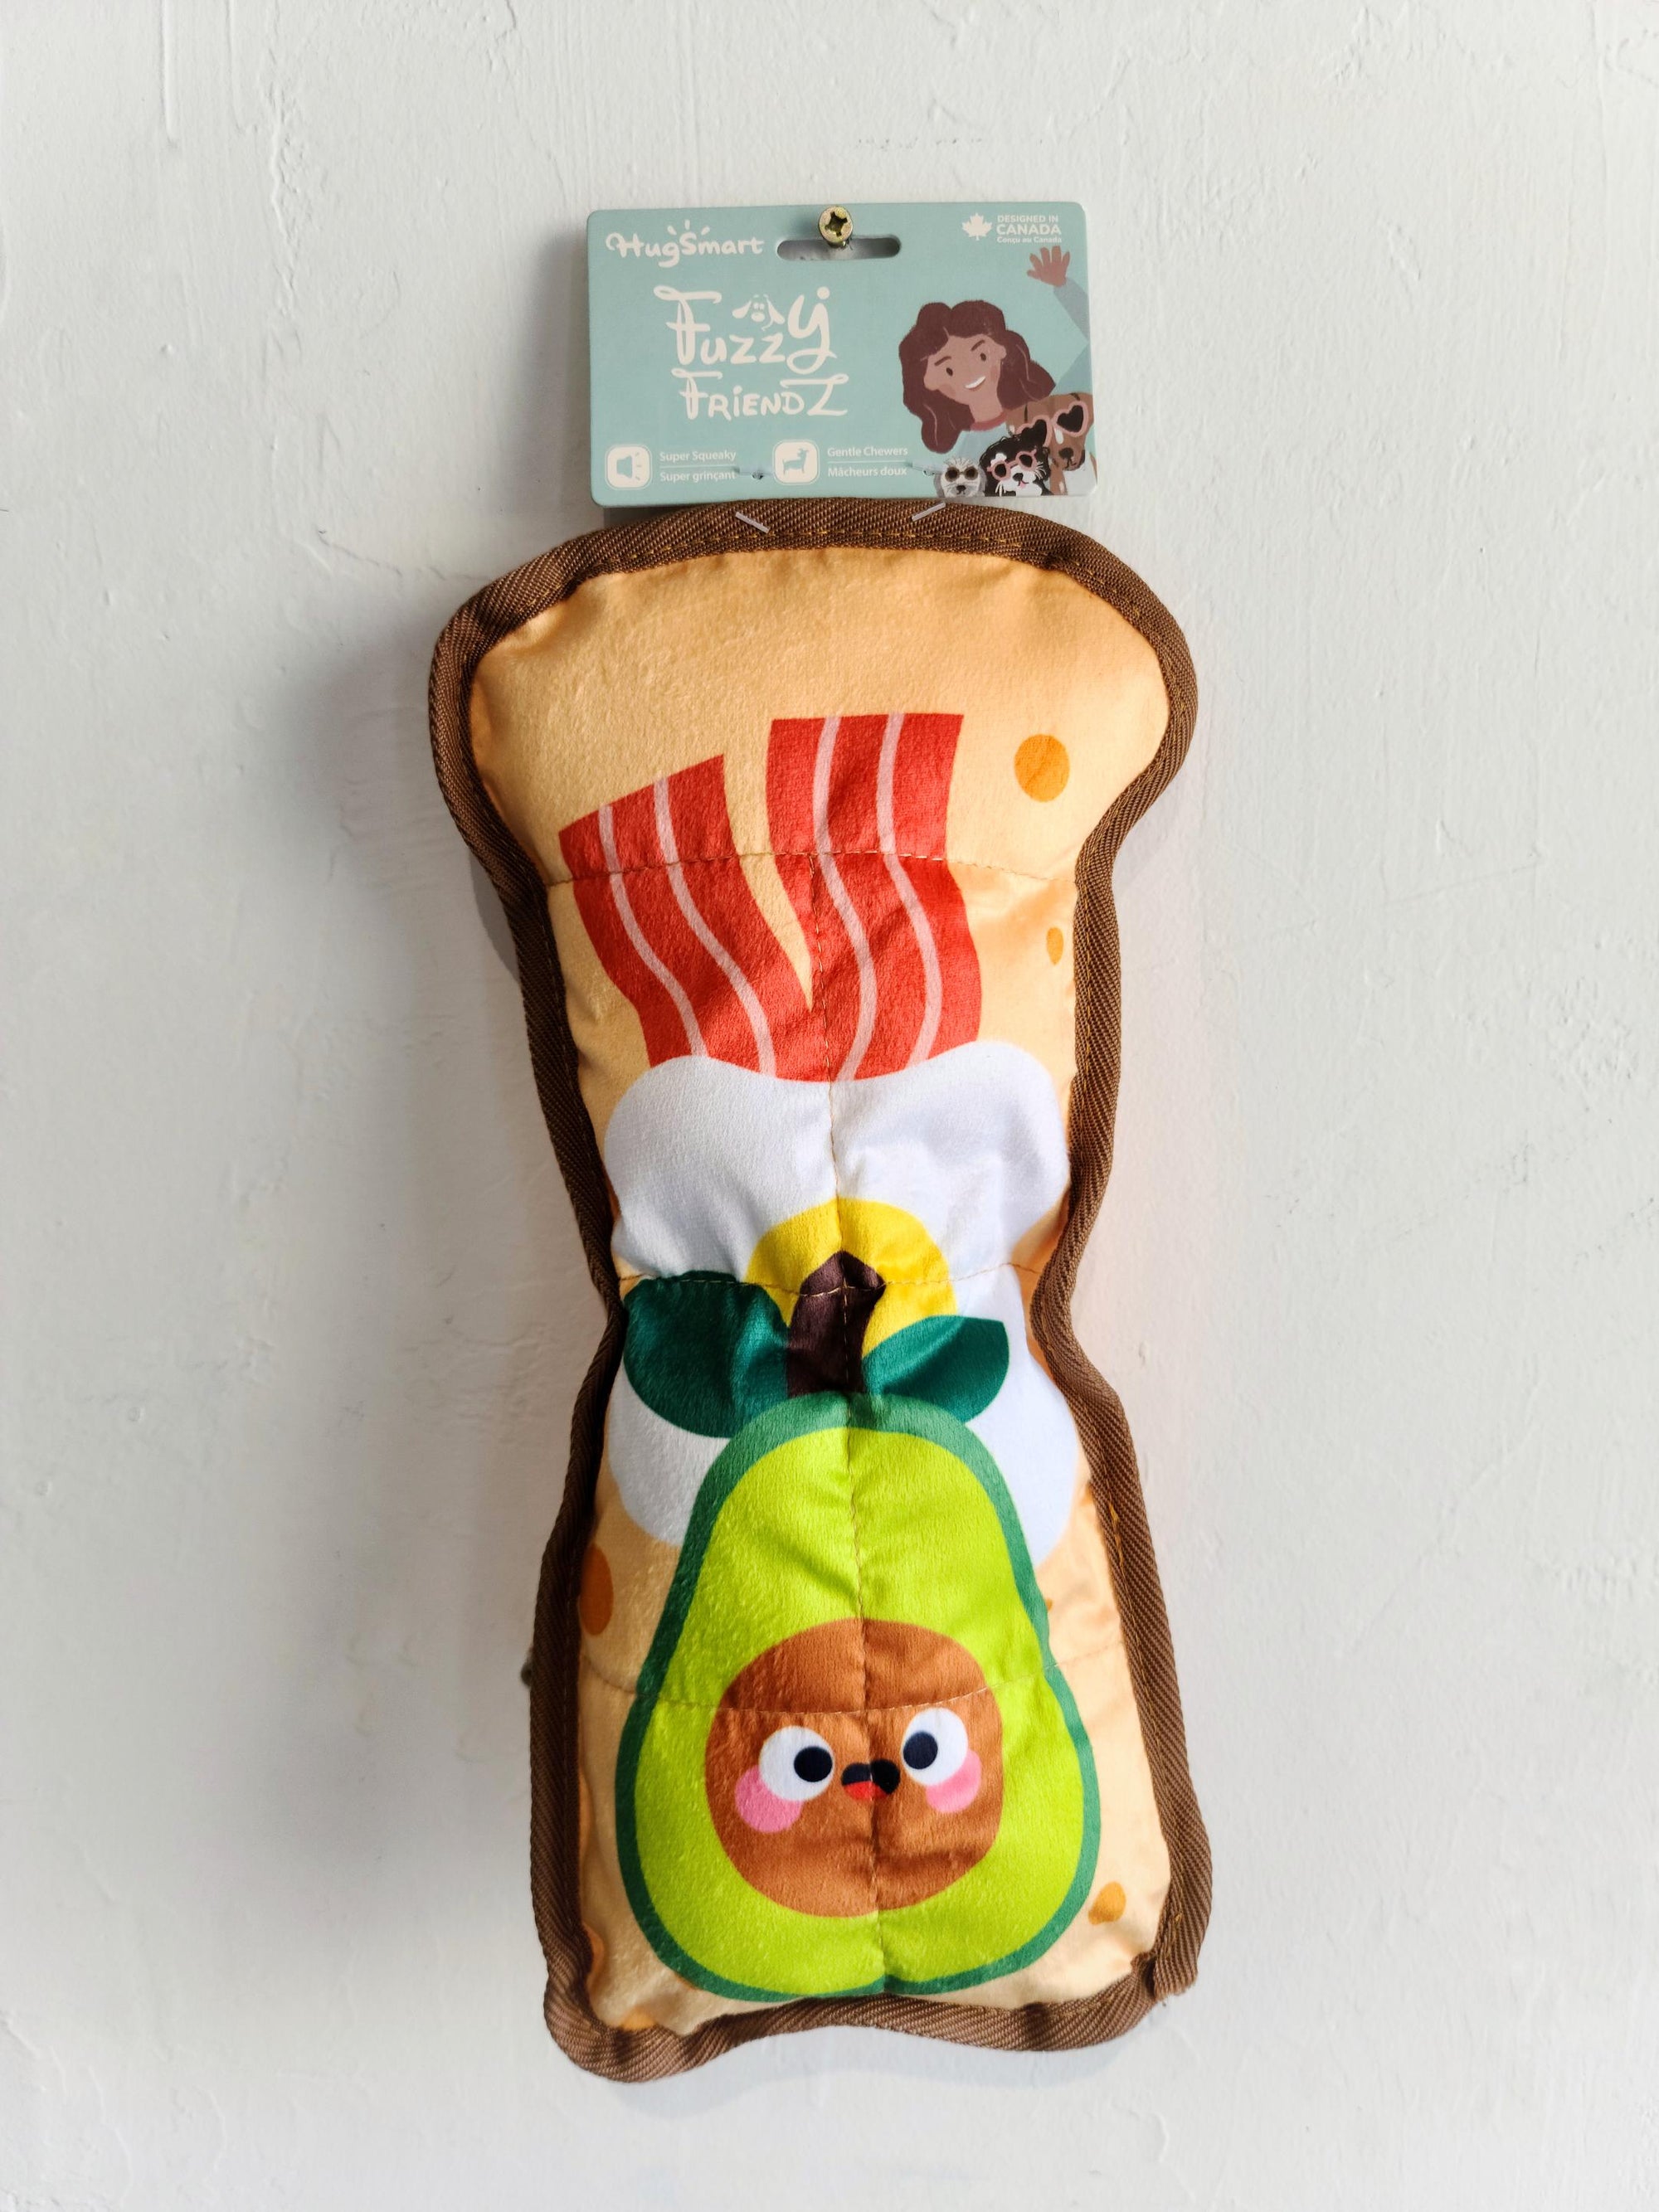 HugSmart Fuzzy Friendz - Avocado Toast Dog Toy